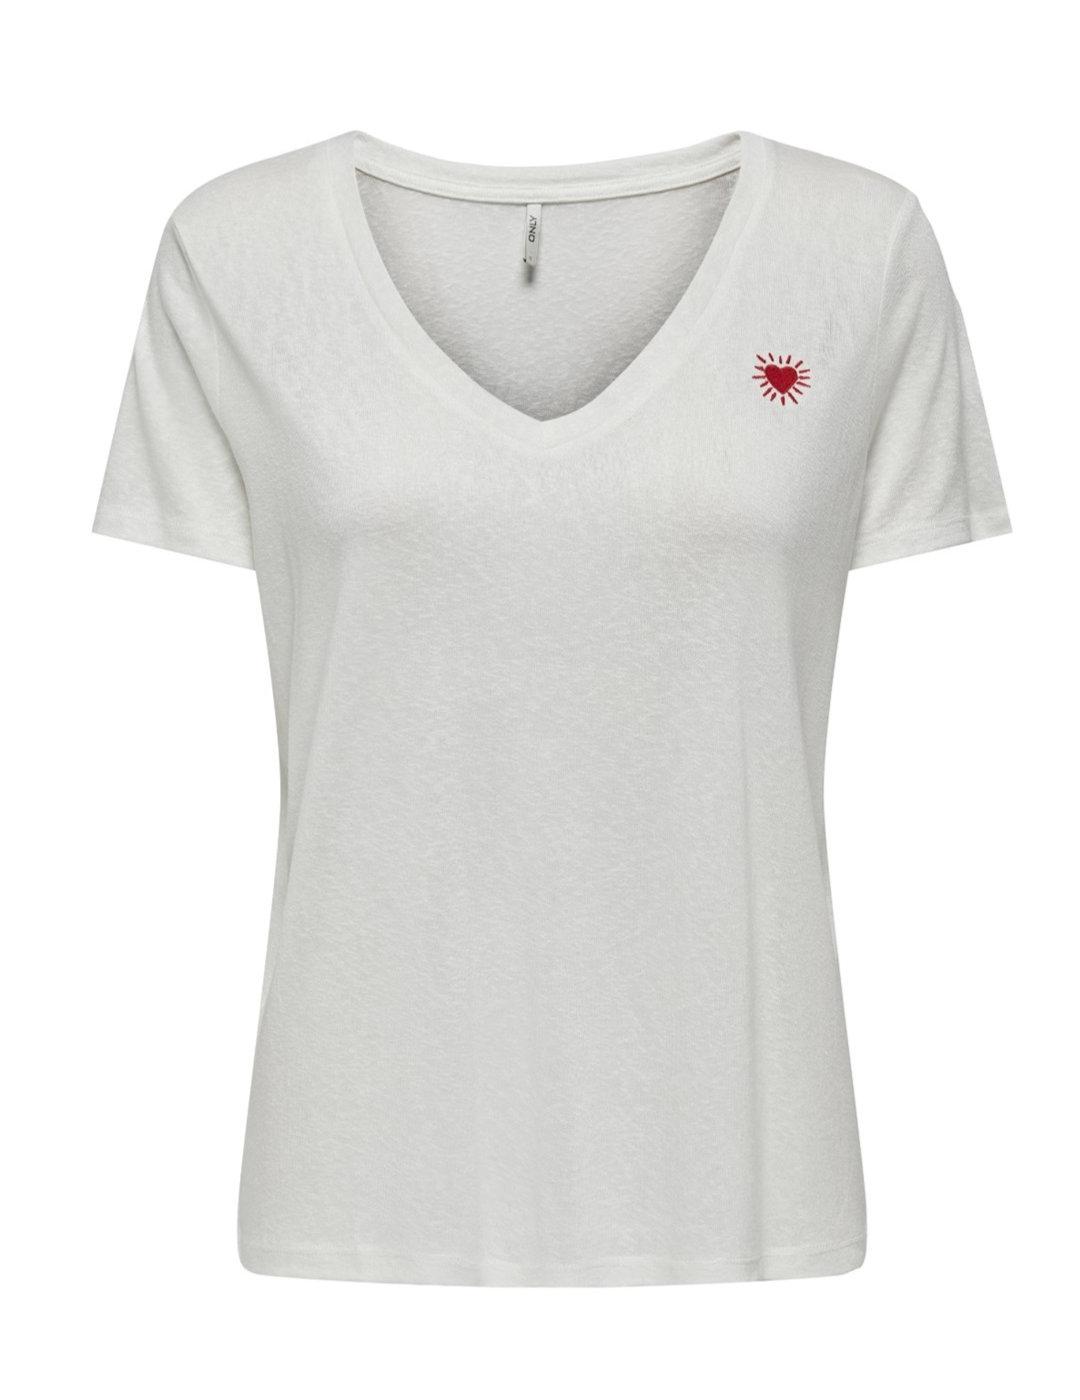 Camiseta Only Belle blanco Heart manga corta para mujer